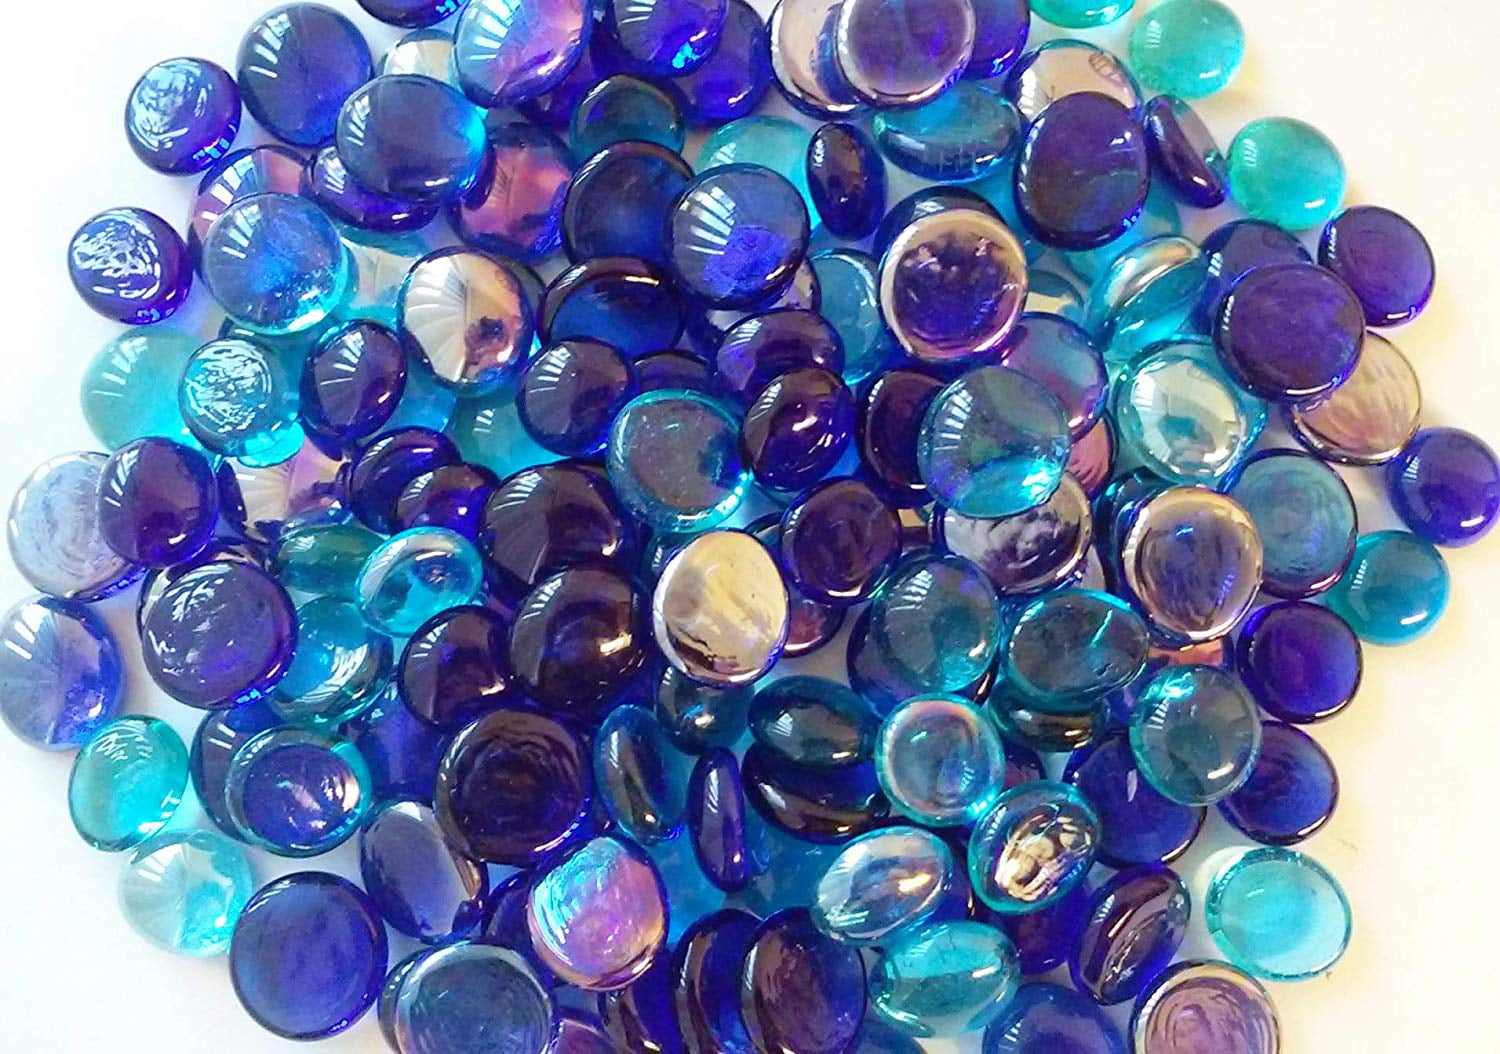 Vase Fillers Glass Gems Creative Stuff Glass 1 LB Aqua Blue 